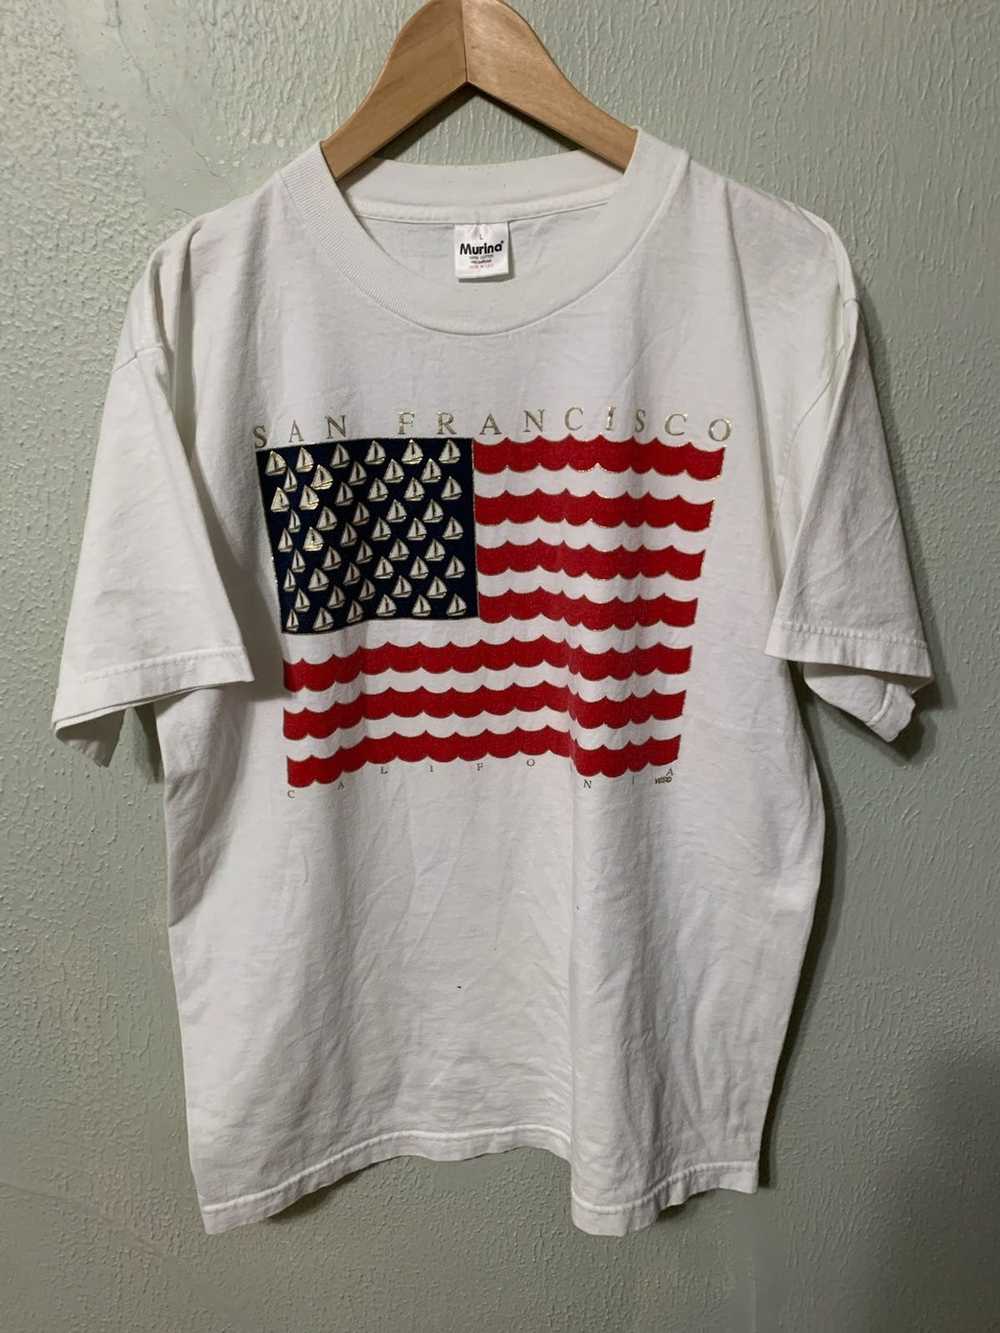 Vintage Vintage 1990s San Francisco Flag T-Shirt - image 1